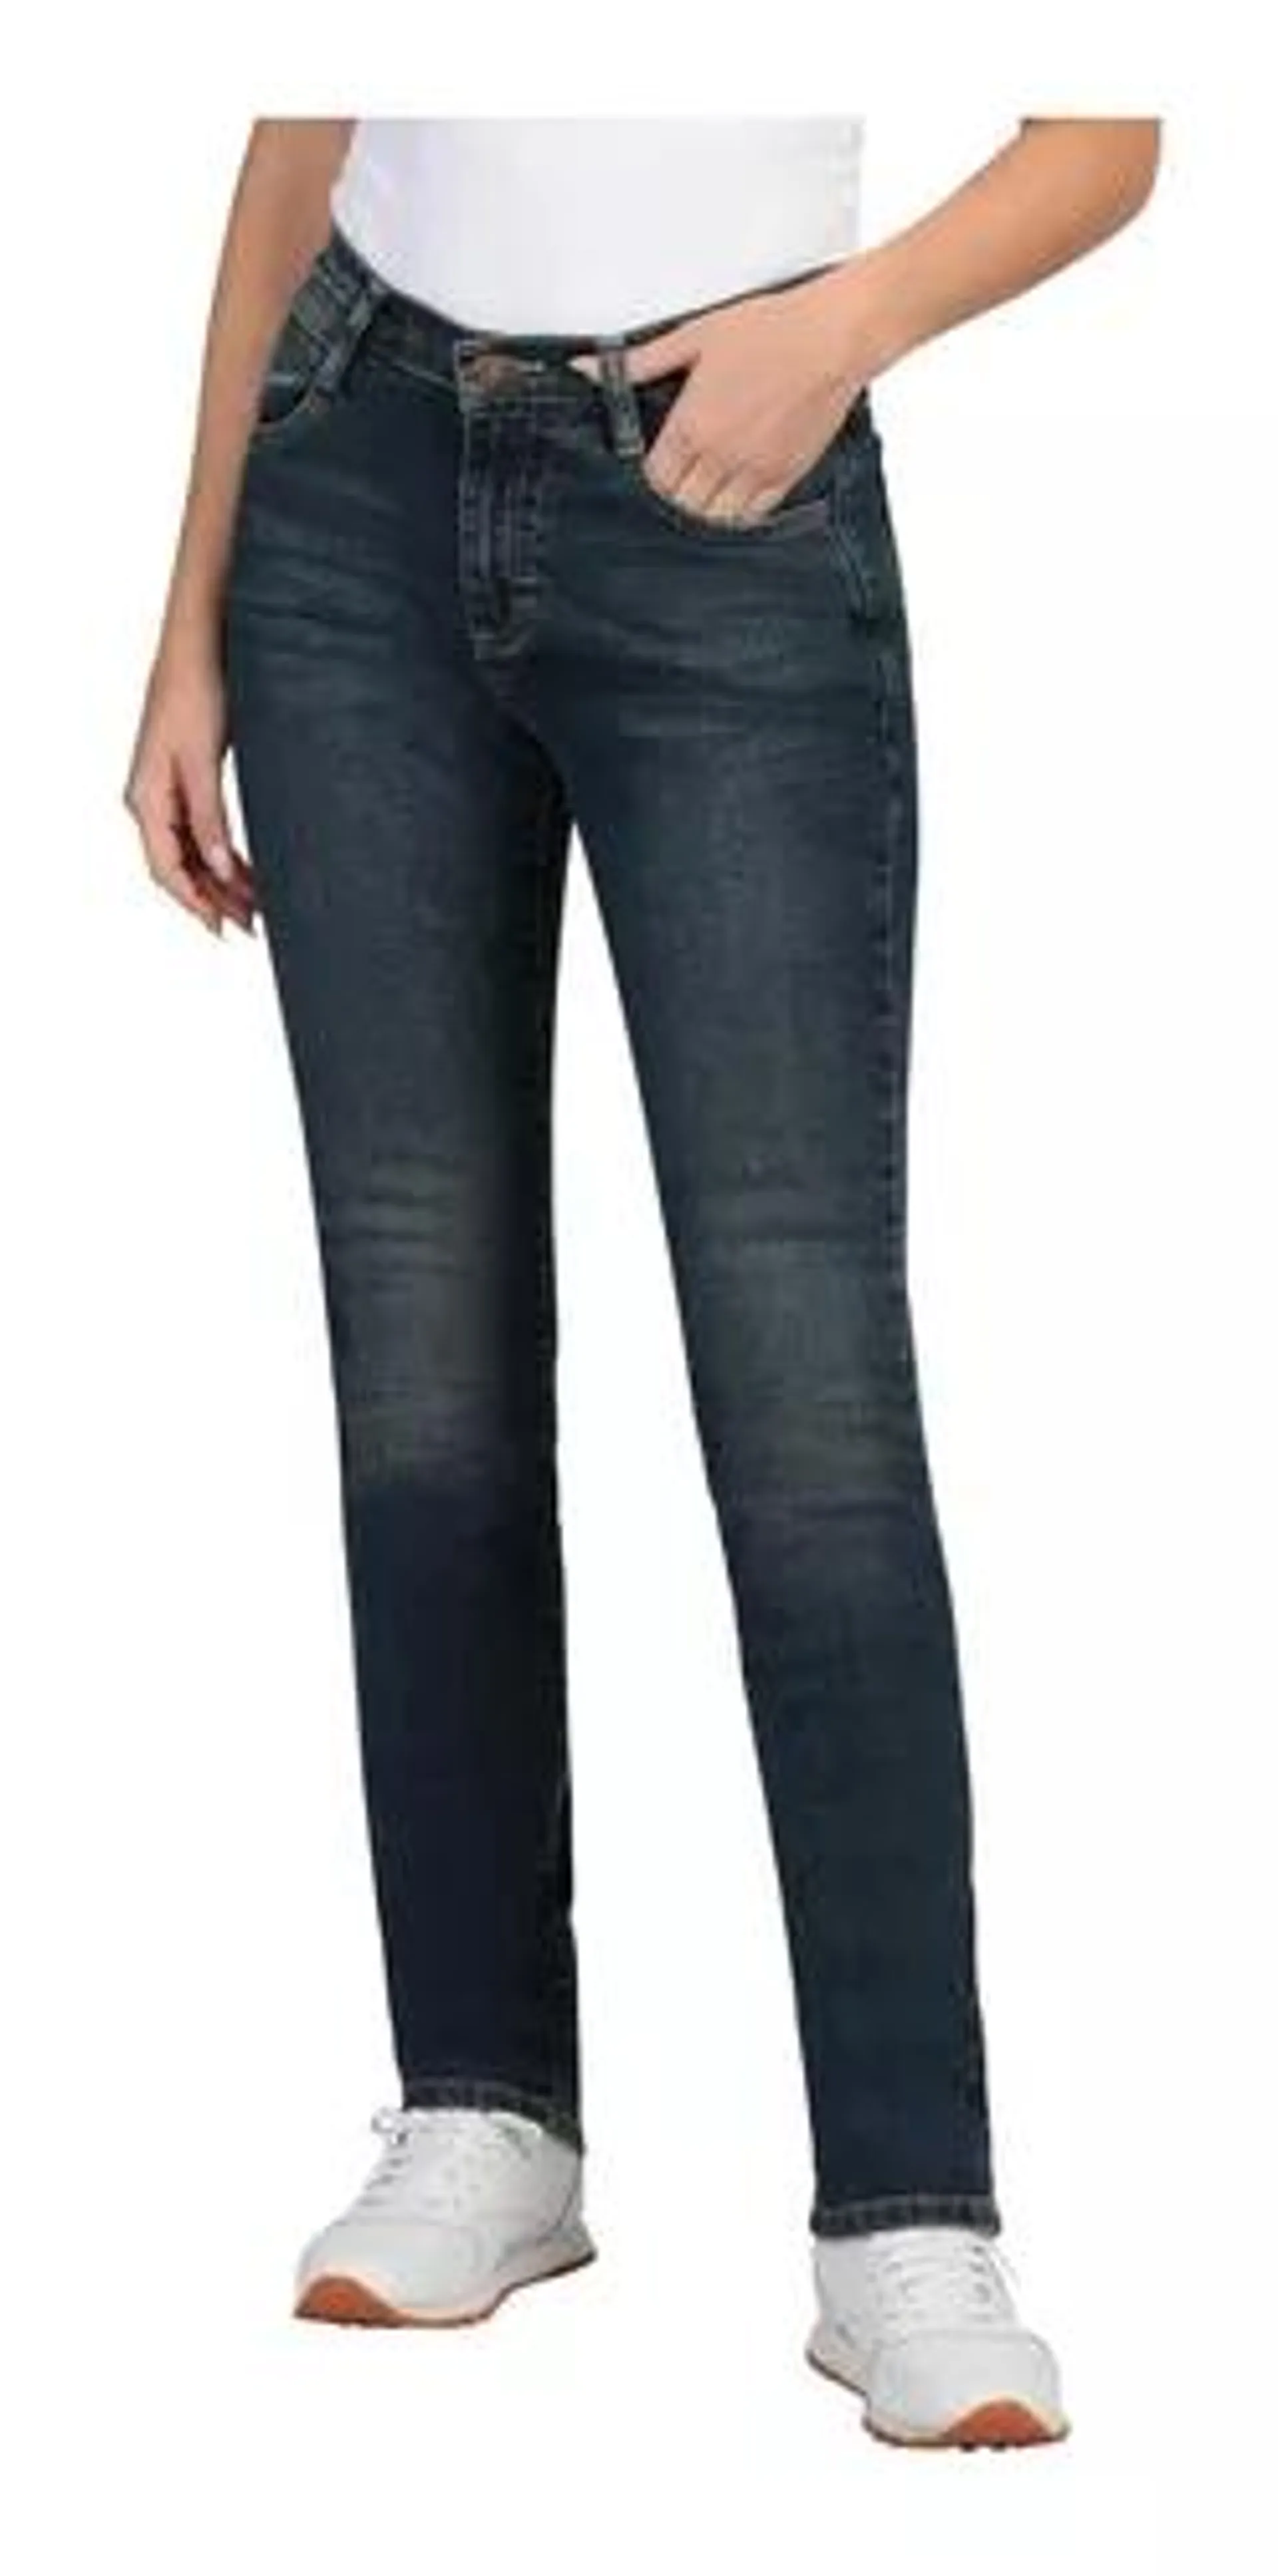 Pantalón Jeans Slim Fit Wrangler Mujer 621